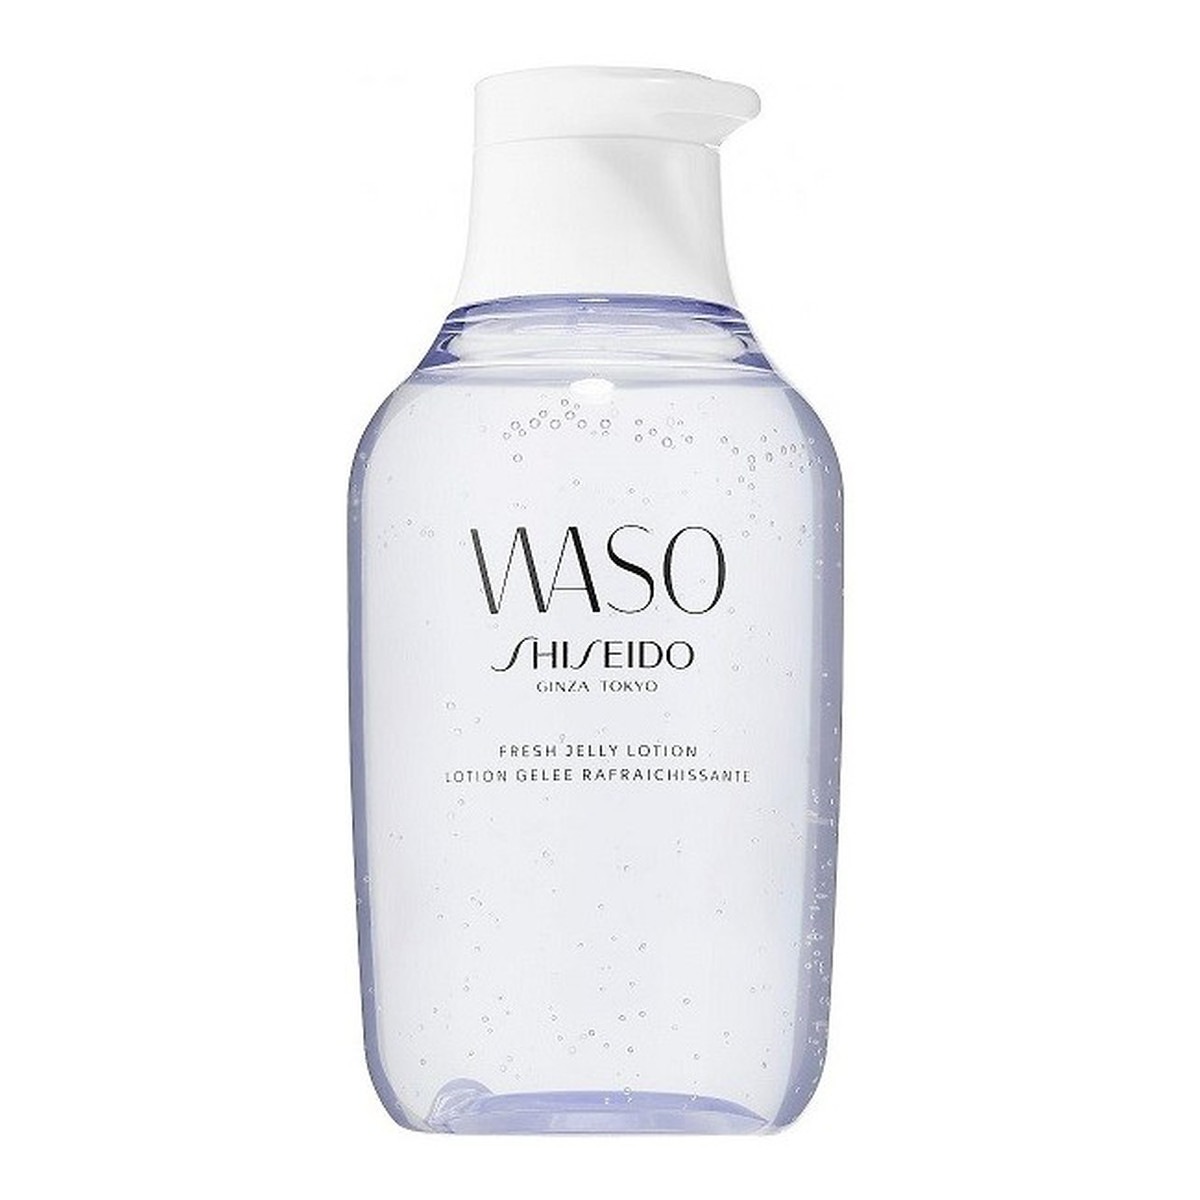 Shiseido Waso Fresh Jelly Lotion balsam w żelu do twarzy 150ml